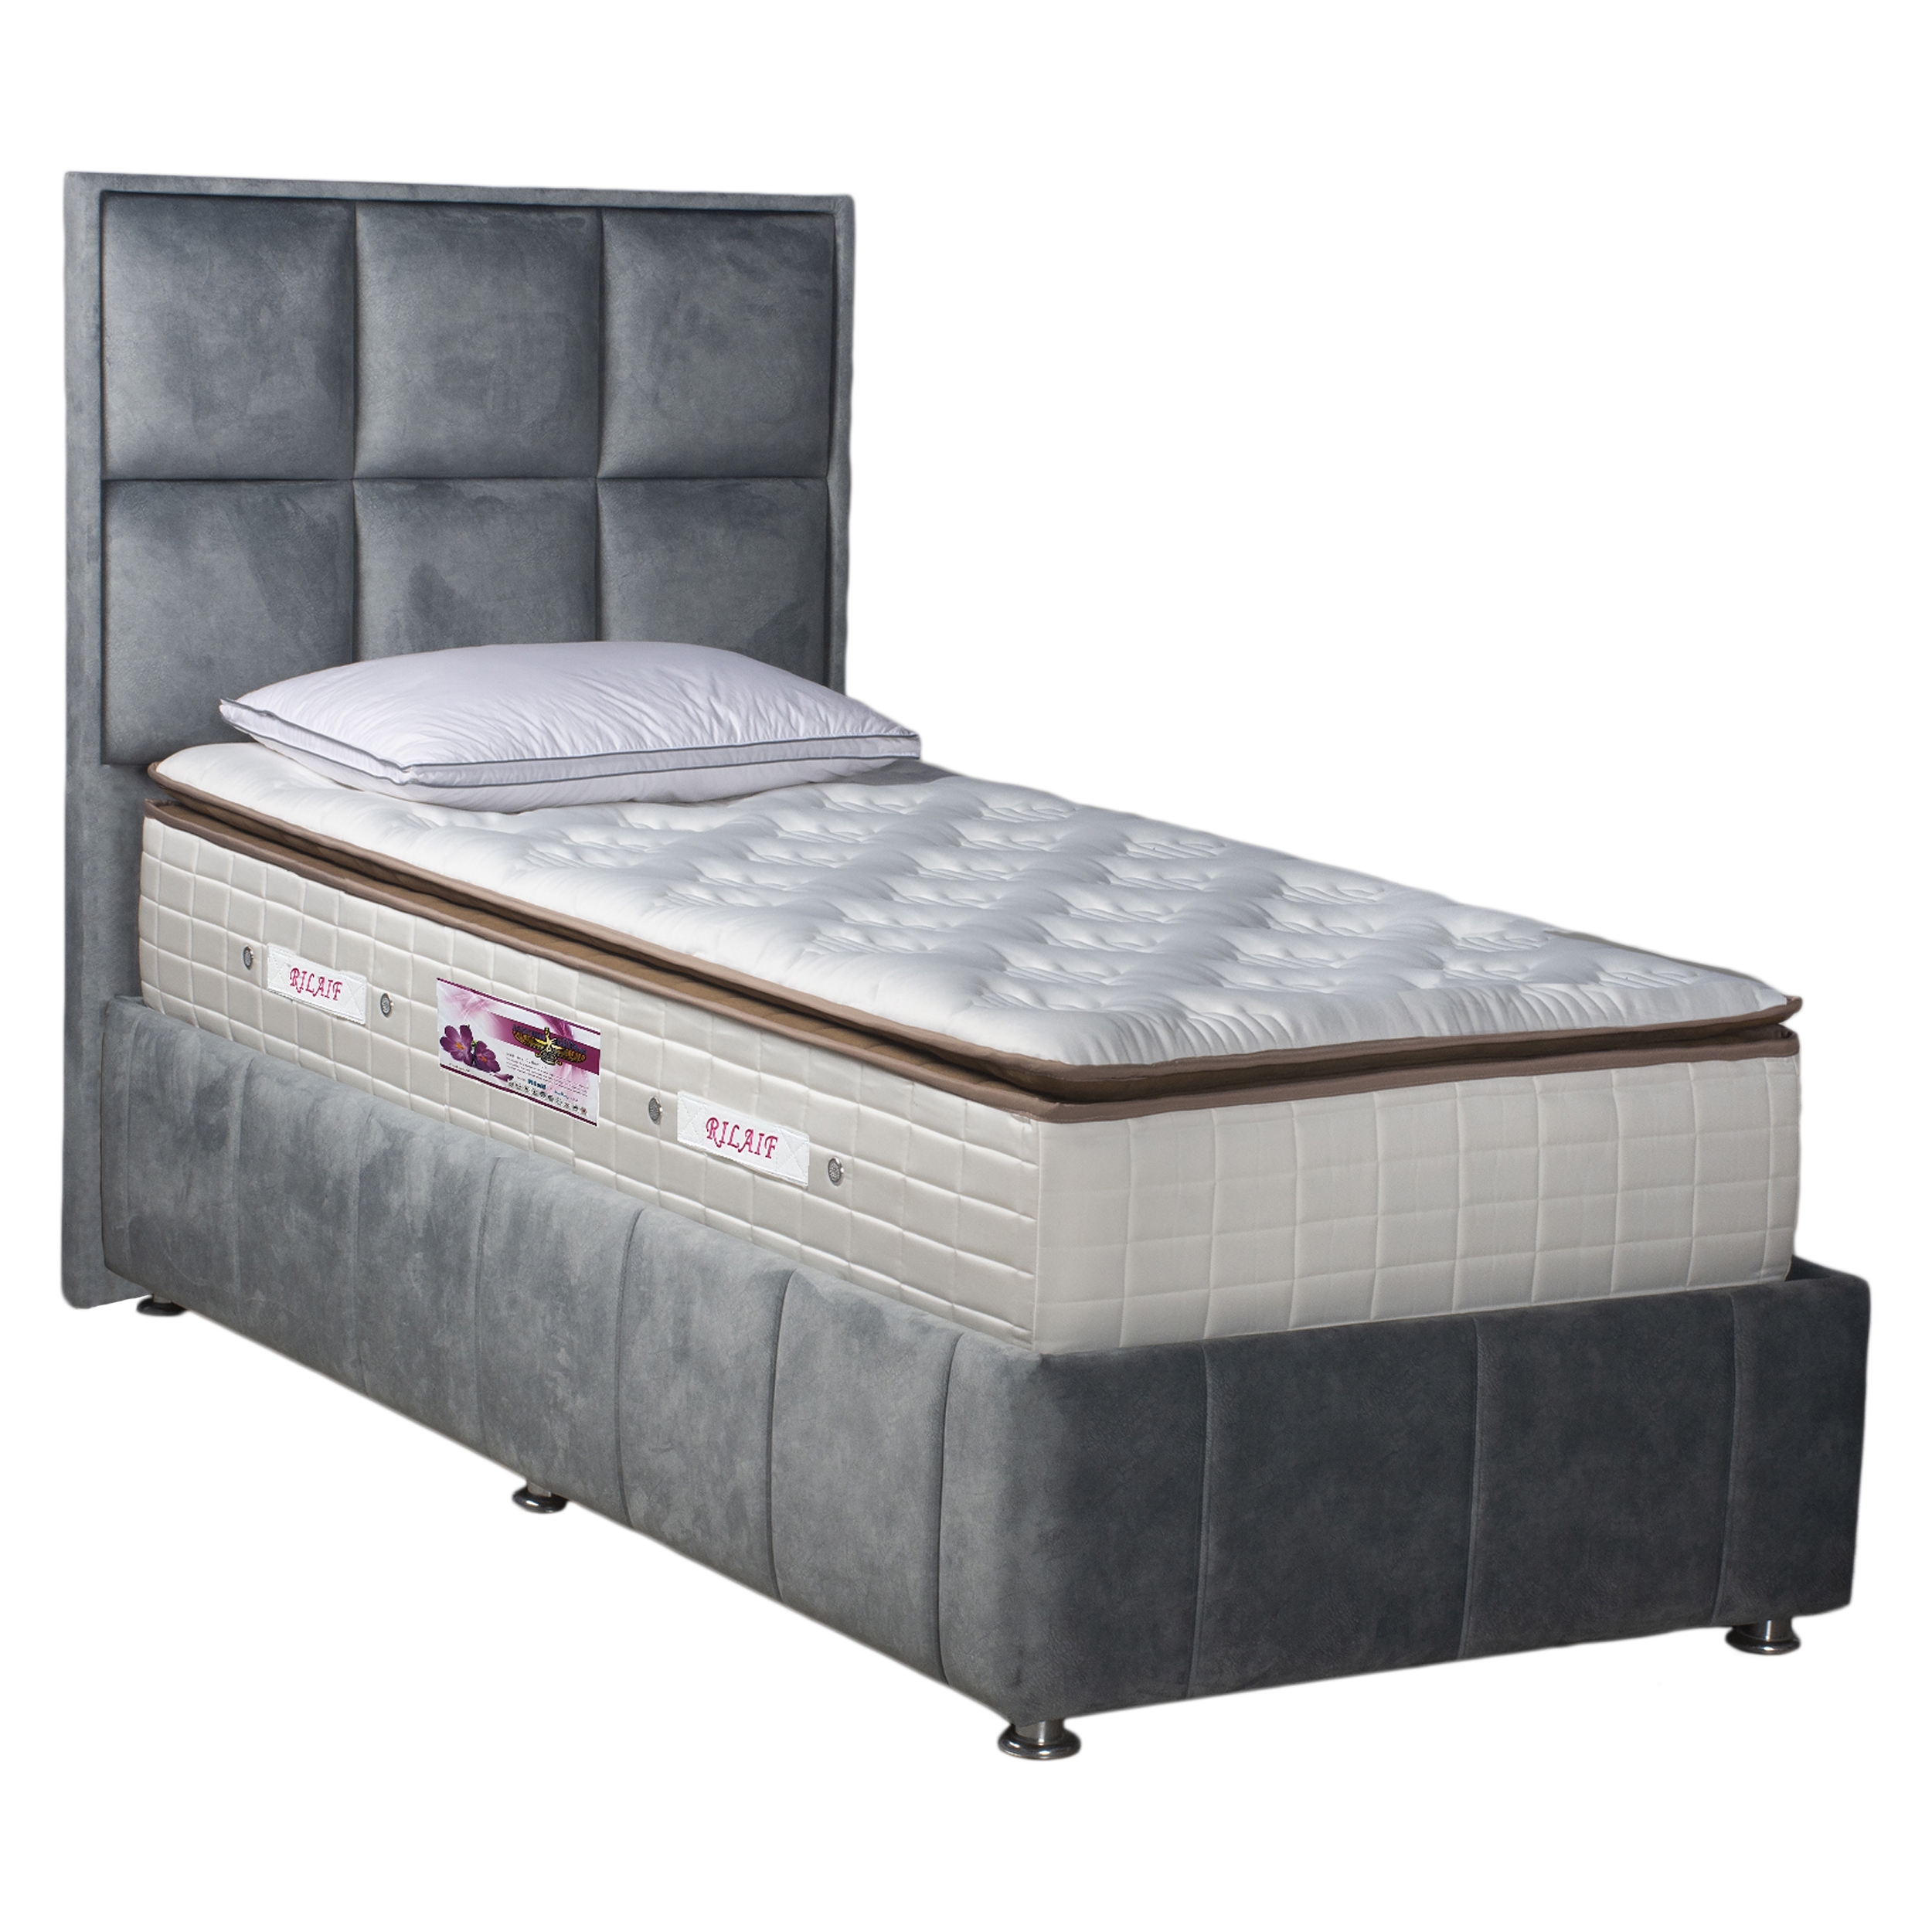 تخت خواب یک نفره مدل MR120 سایز 200×120 سانتی متر